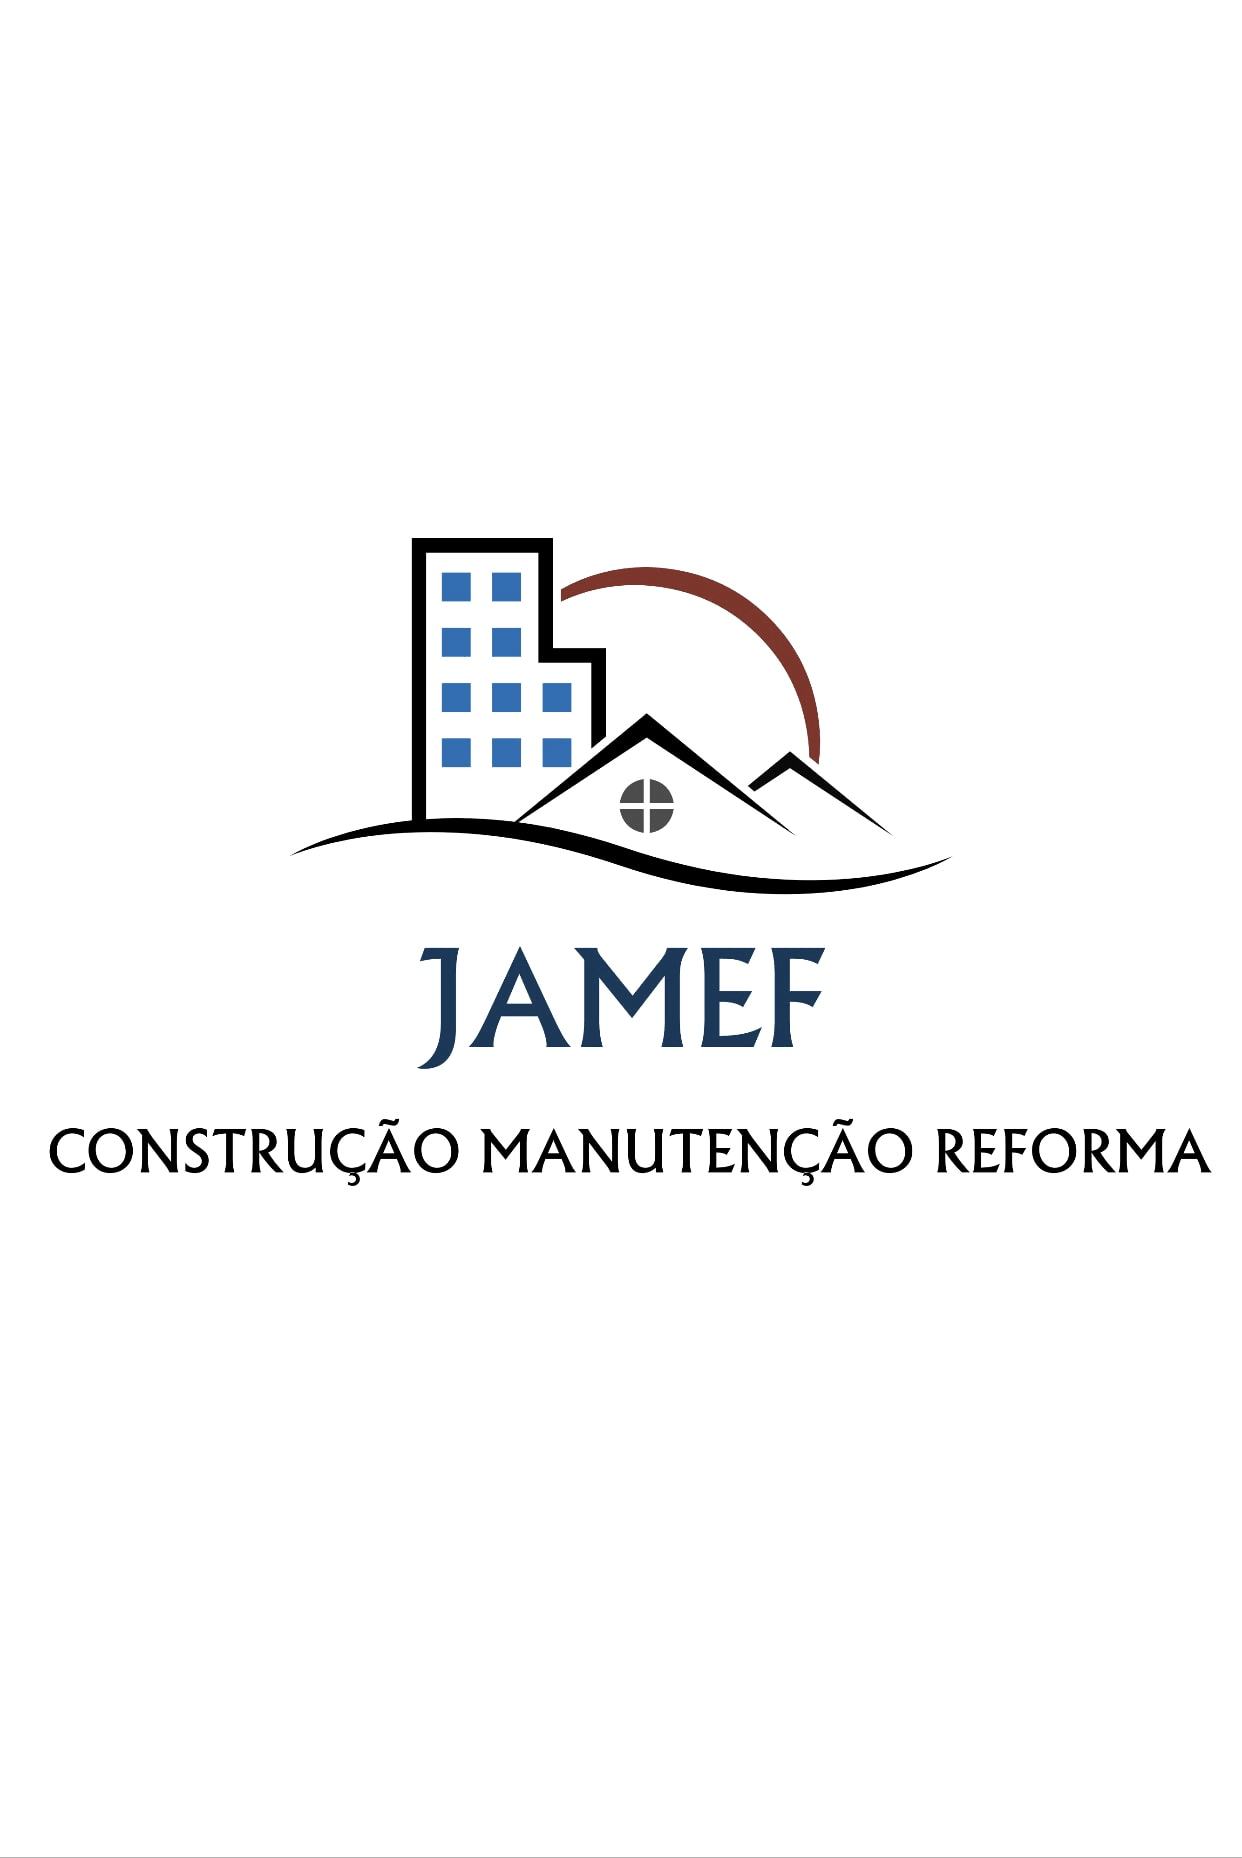 Jamef construção Manutenção e reforma